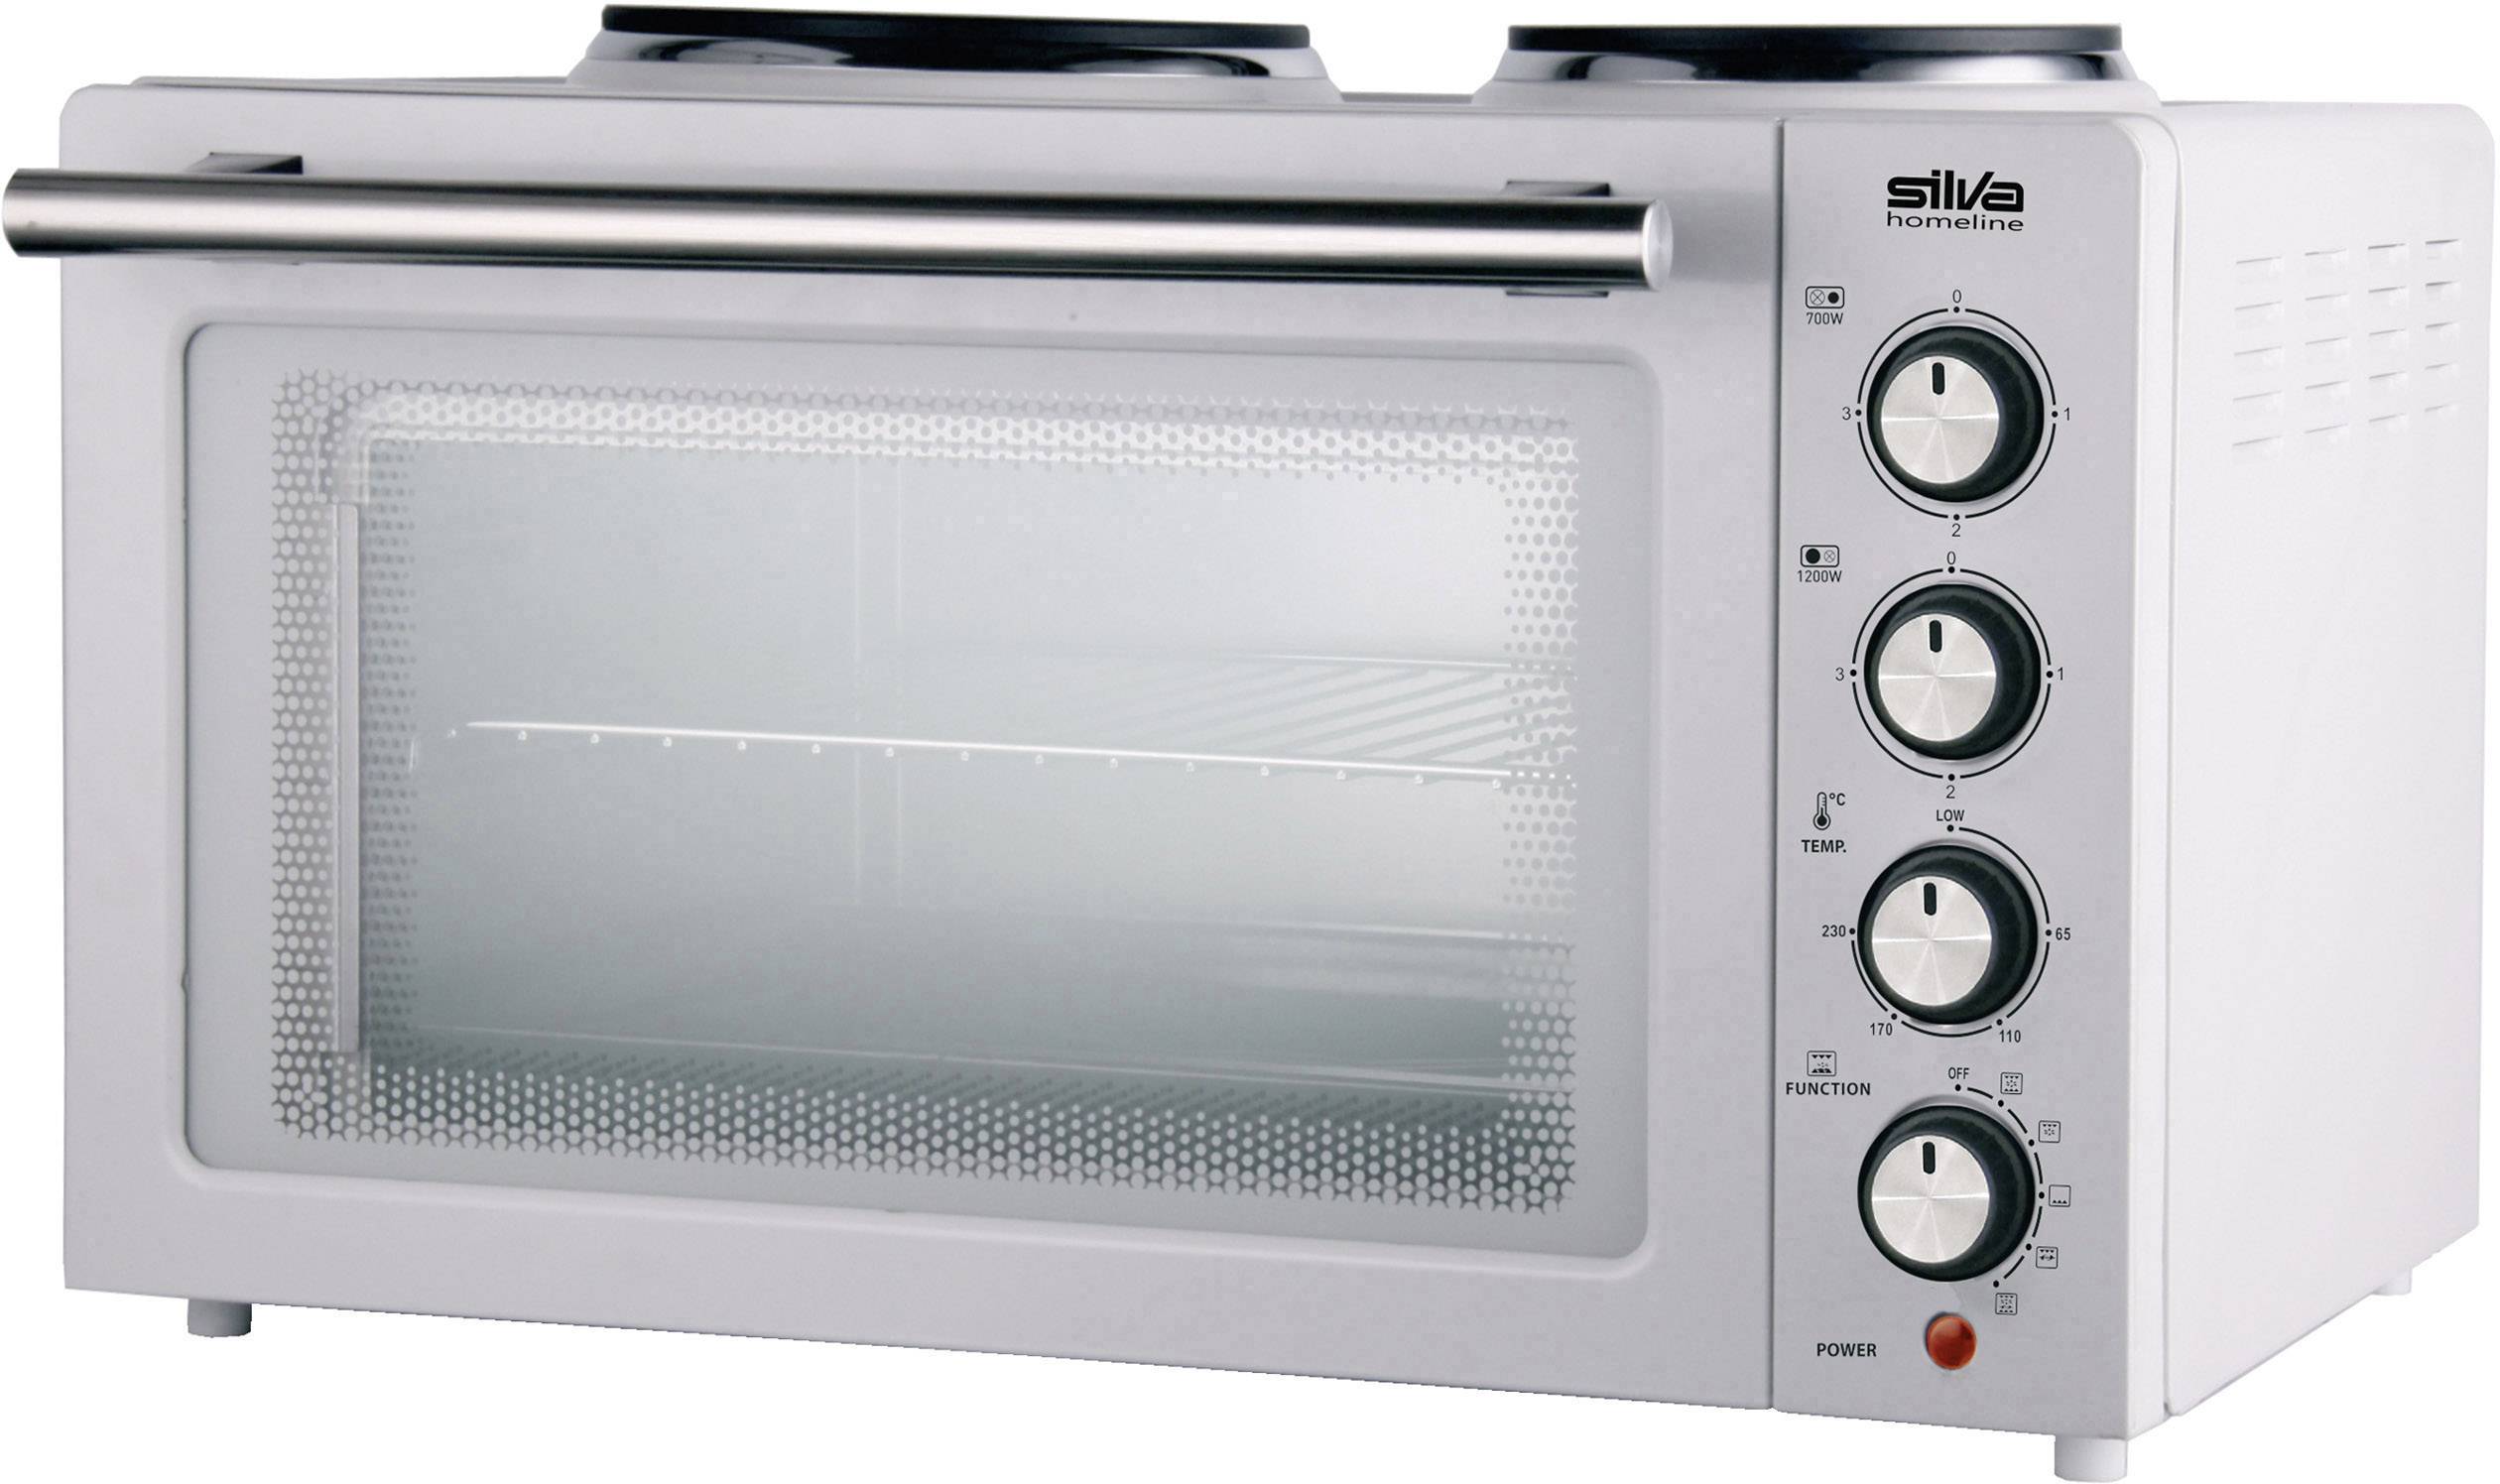 Previs site raket Autonomie Silva Homeline KK 2900 Mini-oven Incl. kookplaat, Grillfunctie,  Heteluchtfunctie, Met grillspies 30 l kopen ? Conrad Electronic